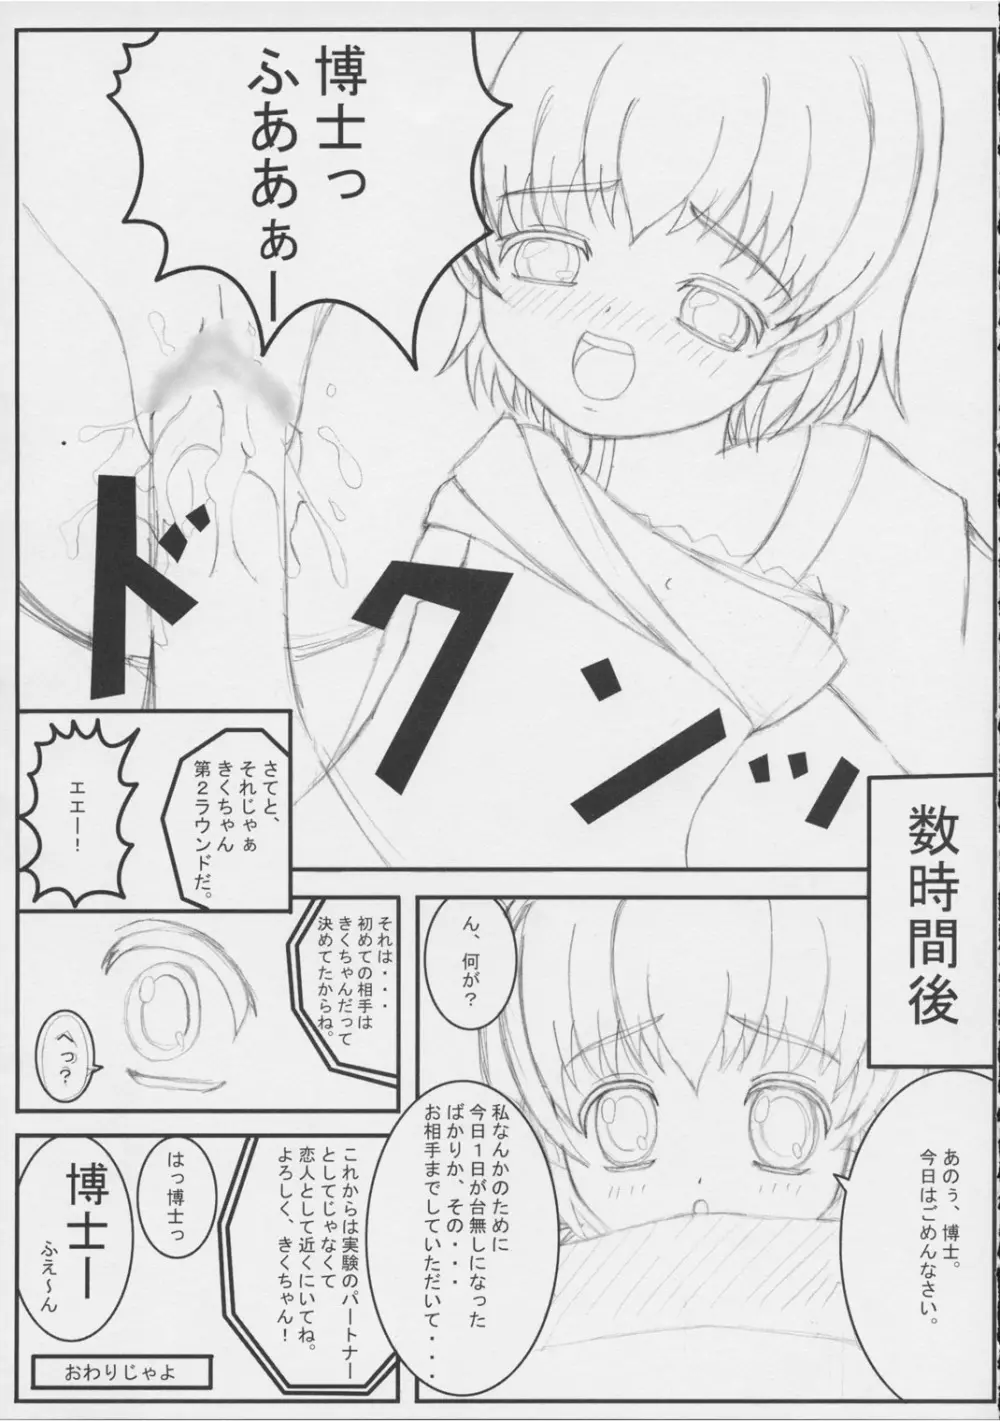 Kiku 8 Go! 14ページ